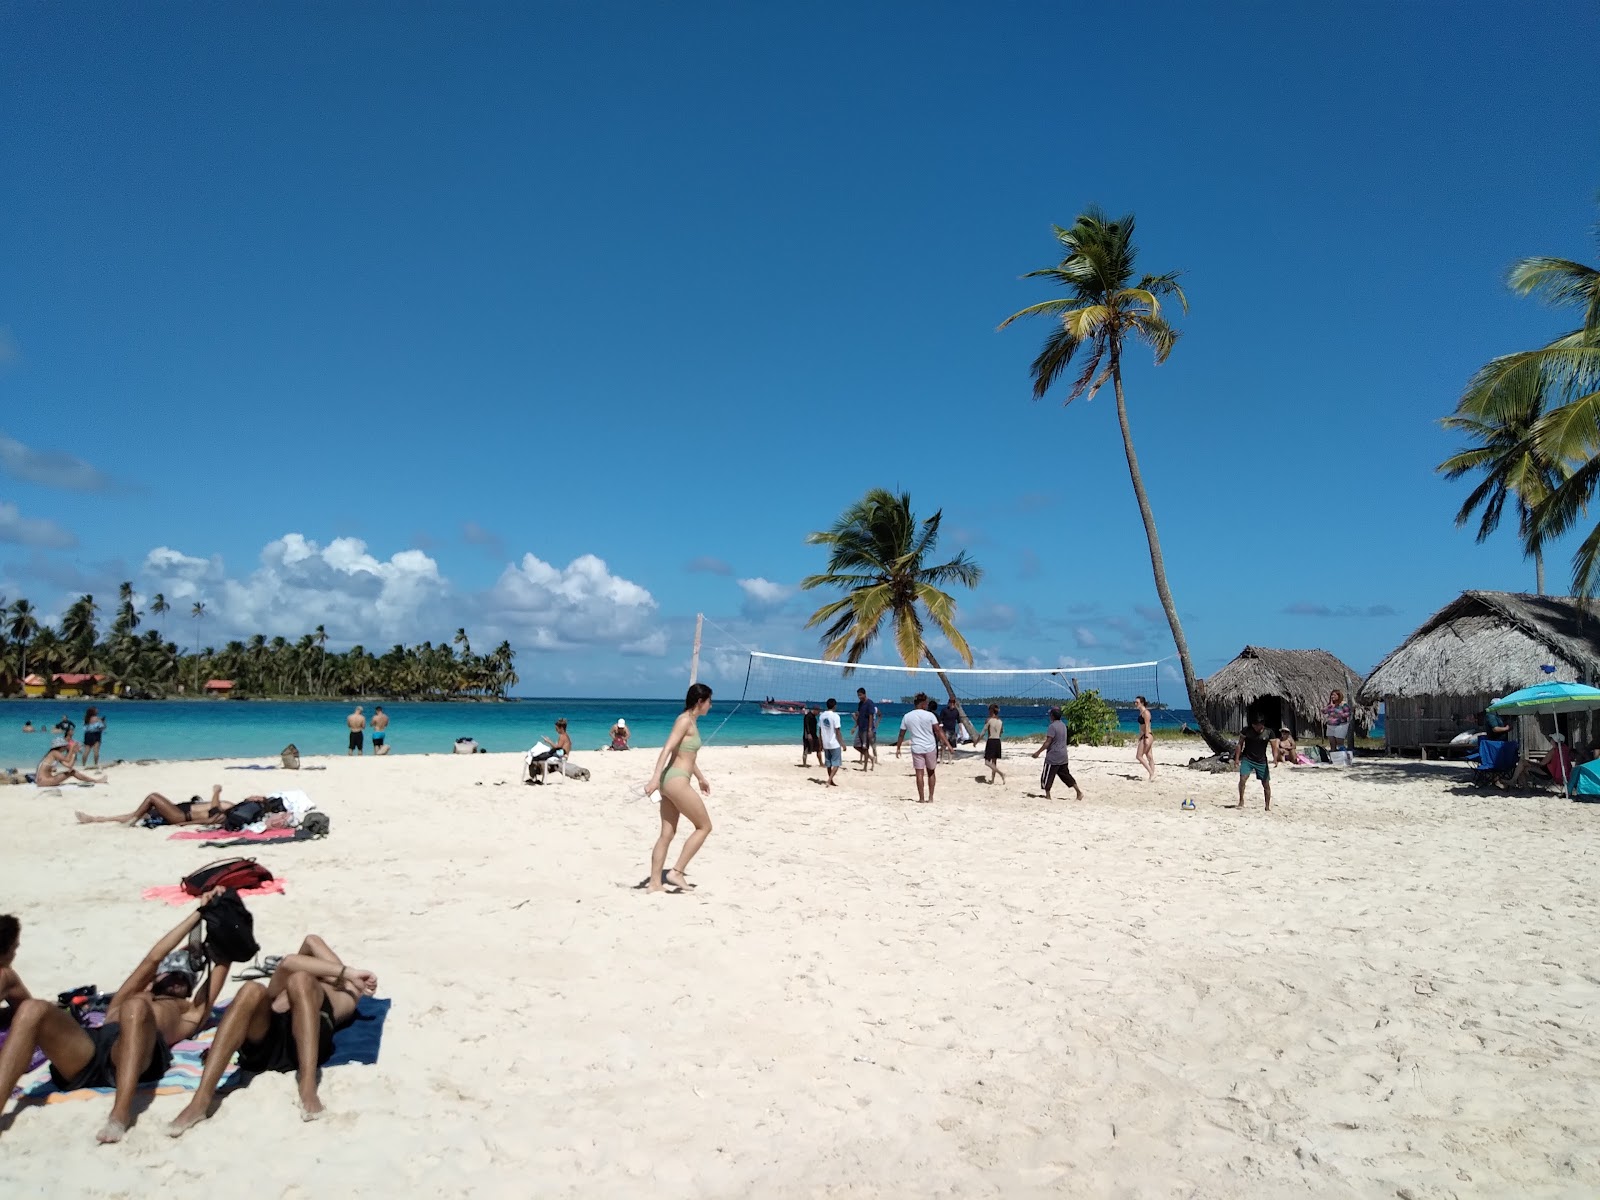 安苏埃洛岛海滩的照片 具有非常干净级别的清洁度